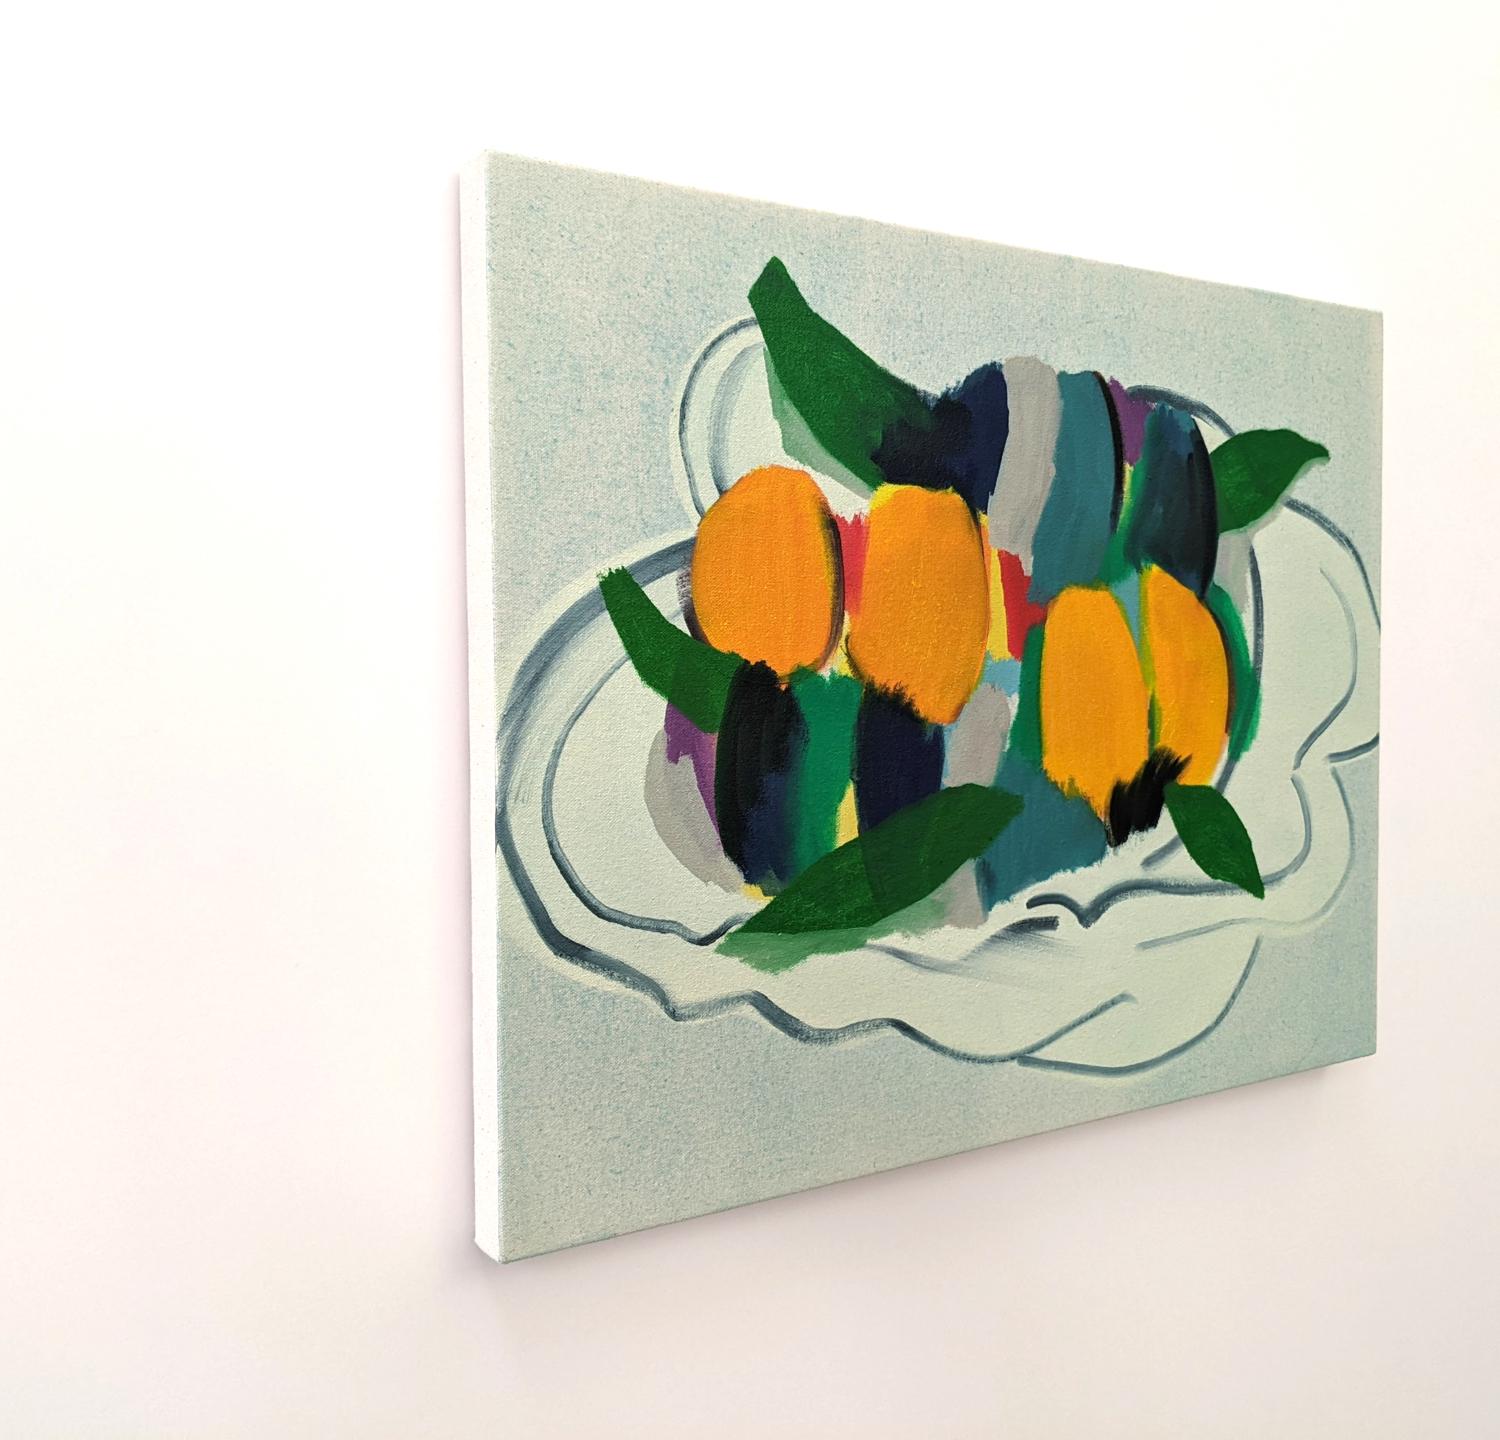 Avec des couleurs vives qui ressortent de la toile, l'artiste montréalaise Mel Davis crée des natures mortes dans son propre style abstrait contemporain. Cette peinture à l'huile représentant des fruits est rendue en orange vif, turquoise et vert